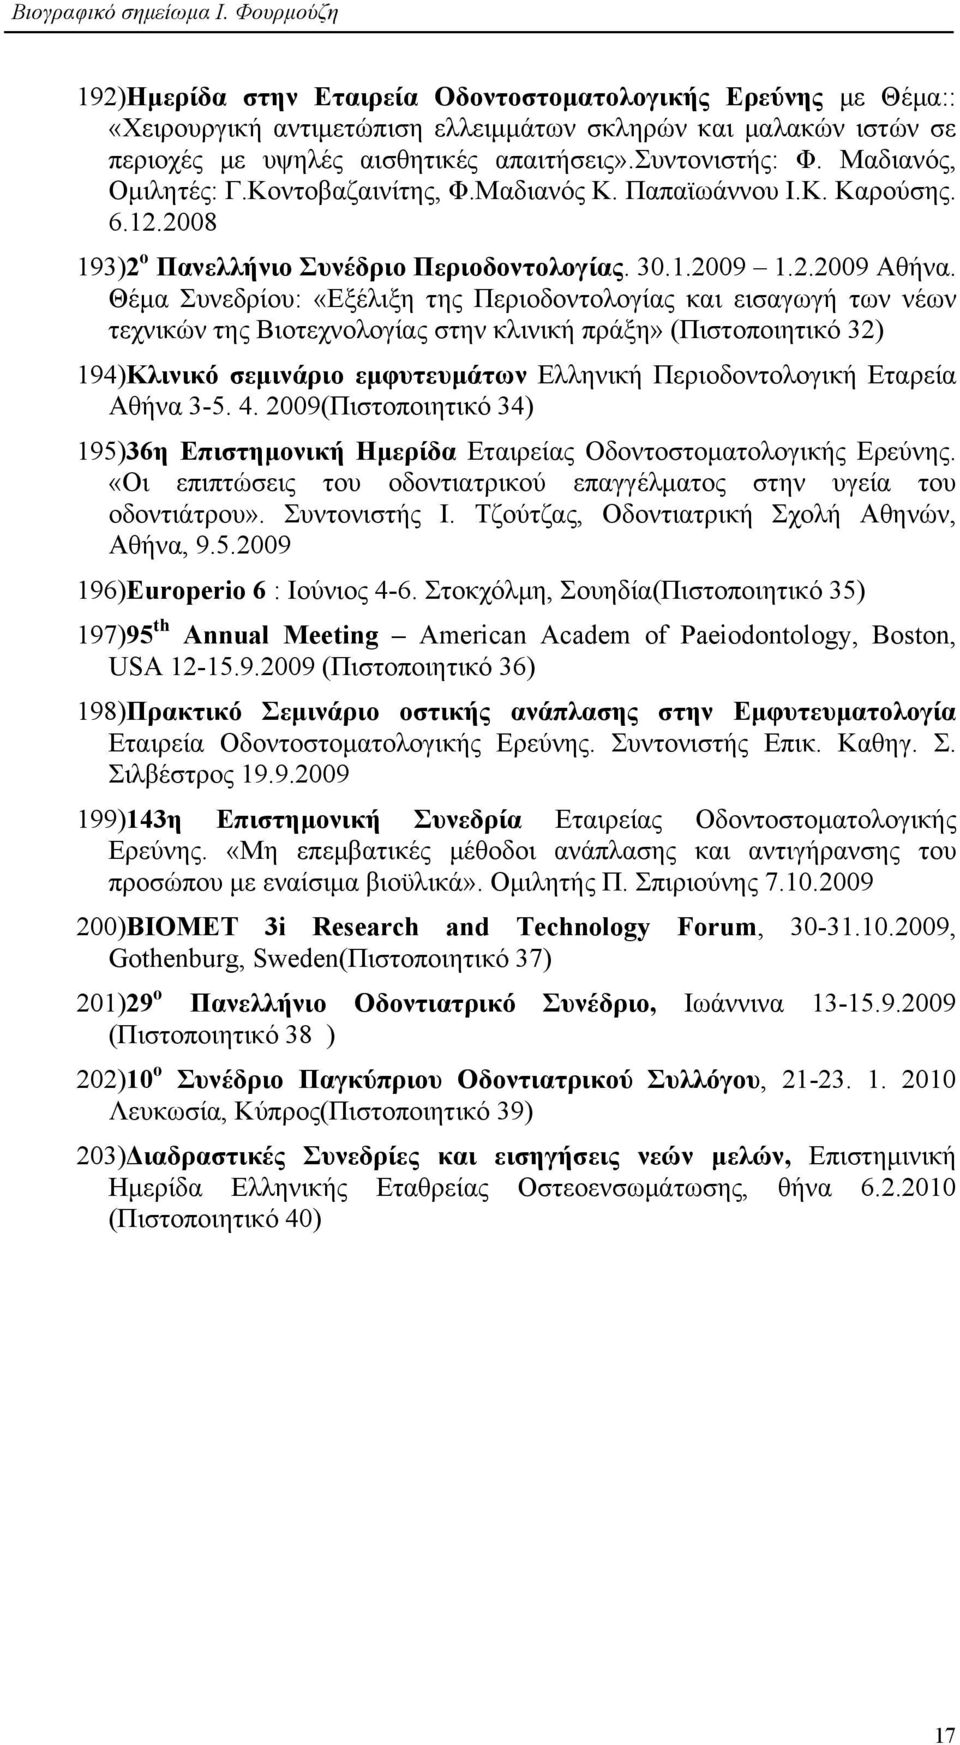 Θέµα Συνεδρίου: «Εξέλιξη της Περιοδοντολογίας και εισαγωγή των νέων τεχνικών της Βιοτεχνολογίας στην κλινική πράξη» (Πιστοποιητικό 32) 194)Κλινικό σεµινάριο εµφυτευµάτων Ελληνική Περιοδοντολογική